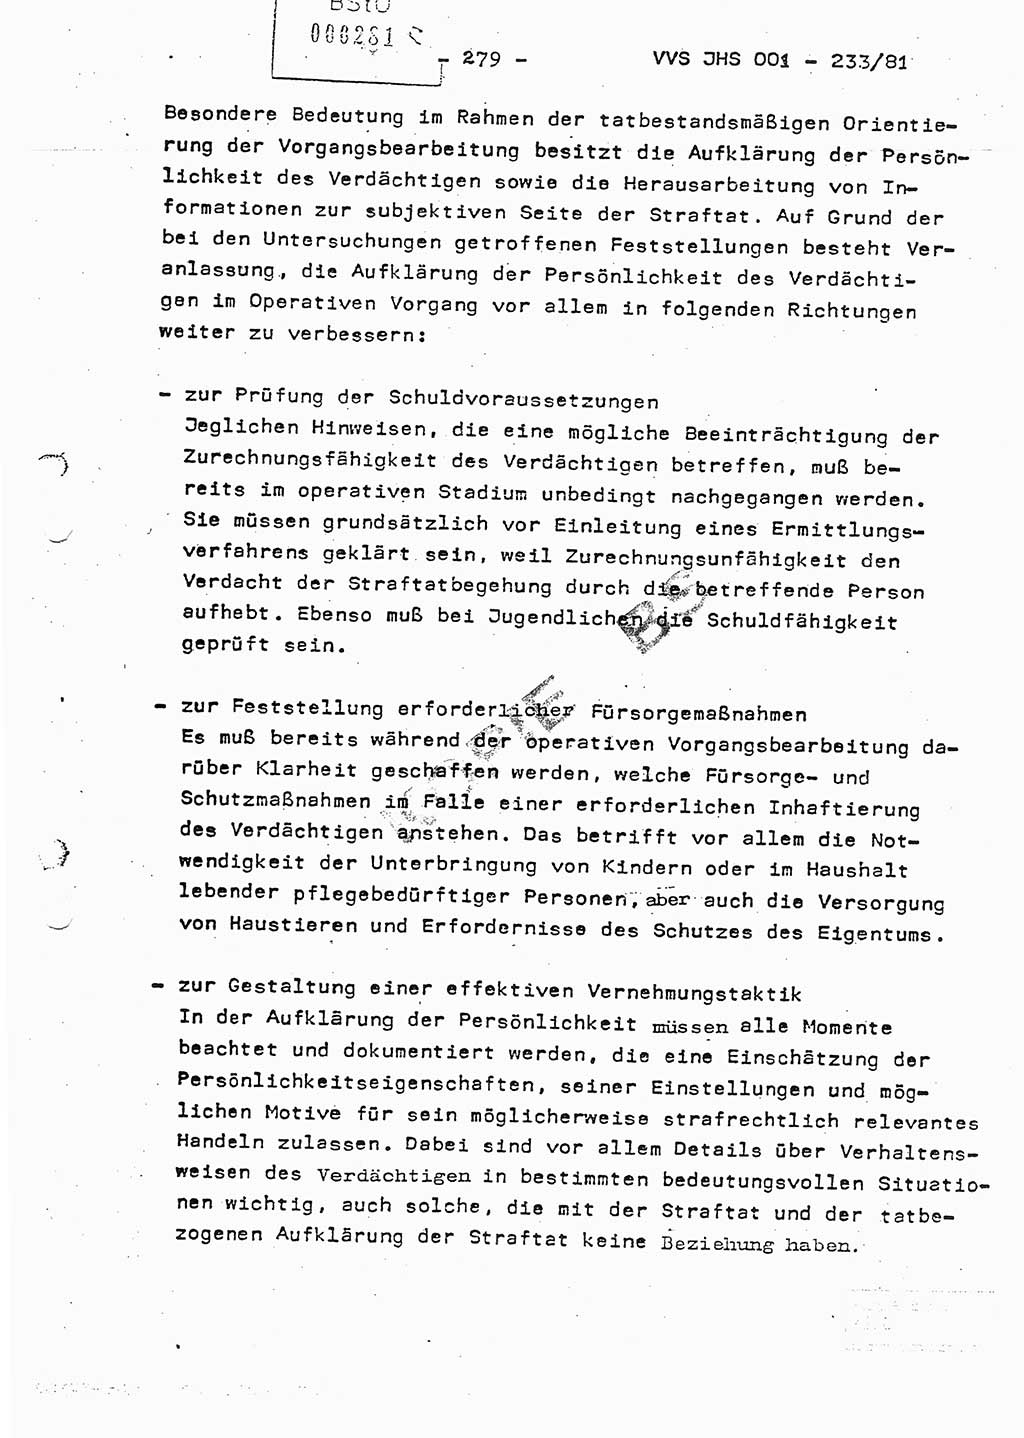 Dissertation Oberstleutnant Horst Zank (JHS), Oberstleutnant Dr. Karl-Heinz Knoblauch (JHS), Oberstleutnant Gustav-Adolf Kowalewski (HA Ⅸ), Oberstleutnant Wolfgang Plötner (HA Ⅸ), Ministerium für Staatssicherheit (MfS) [Deutsche Demokratische Republik (DDR)], Juristische Hochschule (JHS), Vertrauliche Verschlußsache (VVS) o001-233/81, Potsdam 1981, Blatt 279 (Diss. MfS DDR JHS VVS o001-233/81 1981, Bl. 279)